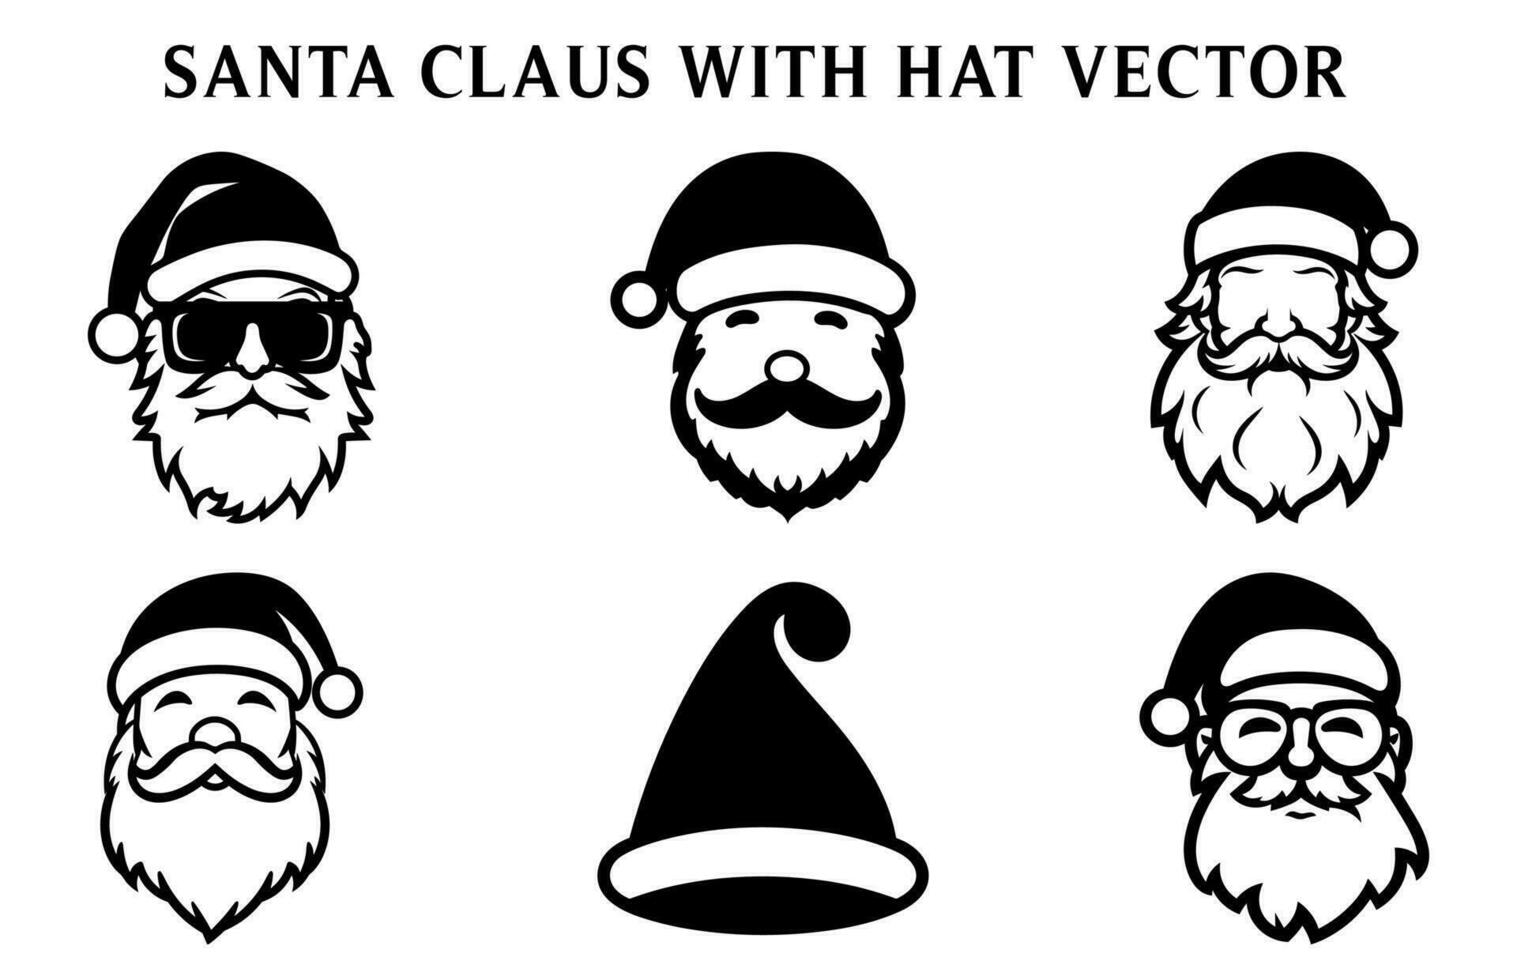 Kerstmis de kerstman claus vector bundel, de kerstman claus vector illustratie